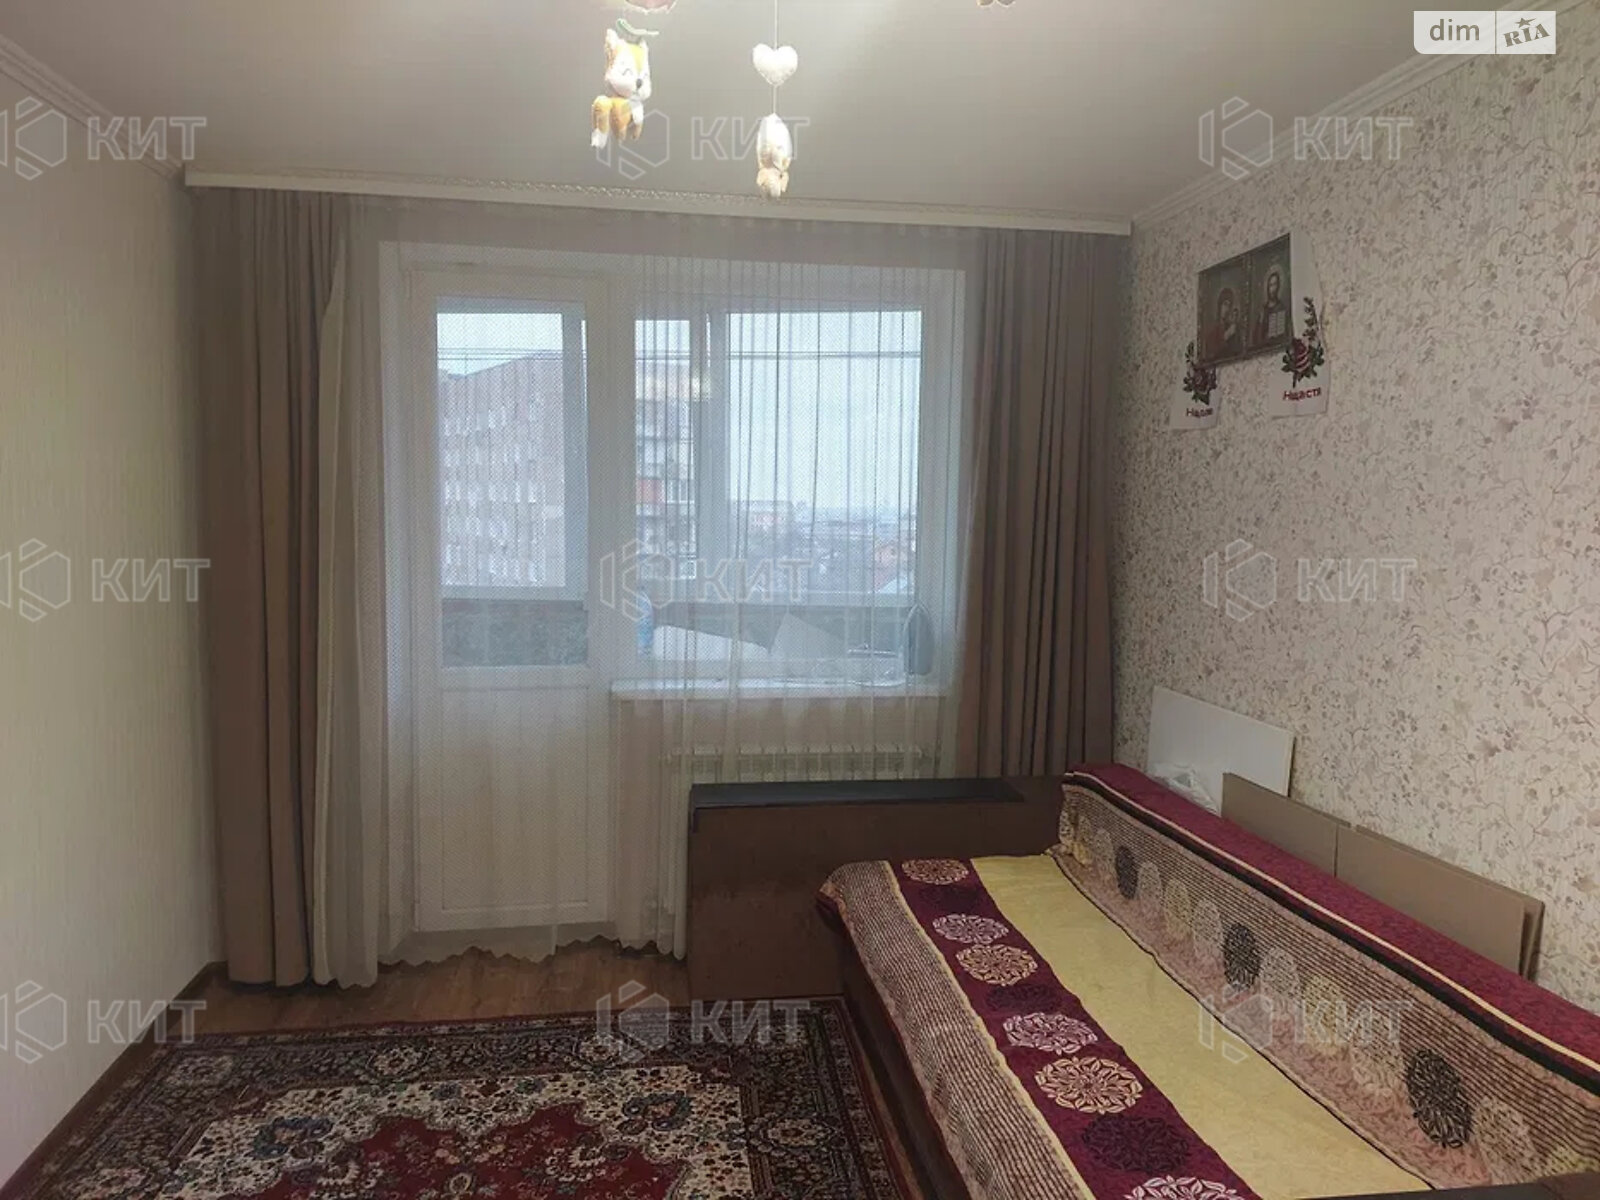 Продажа однокомнатной квартиры в Харькове, на ул. Болбочана Петра 7, район Холодная Гора фото 1